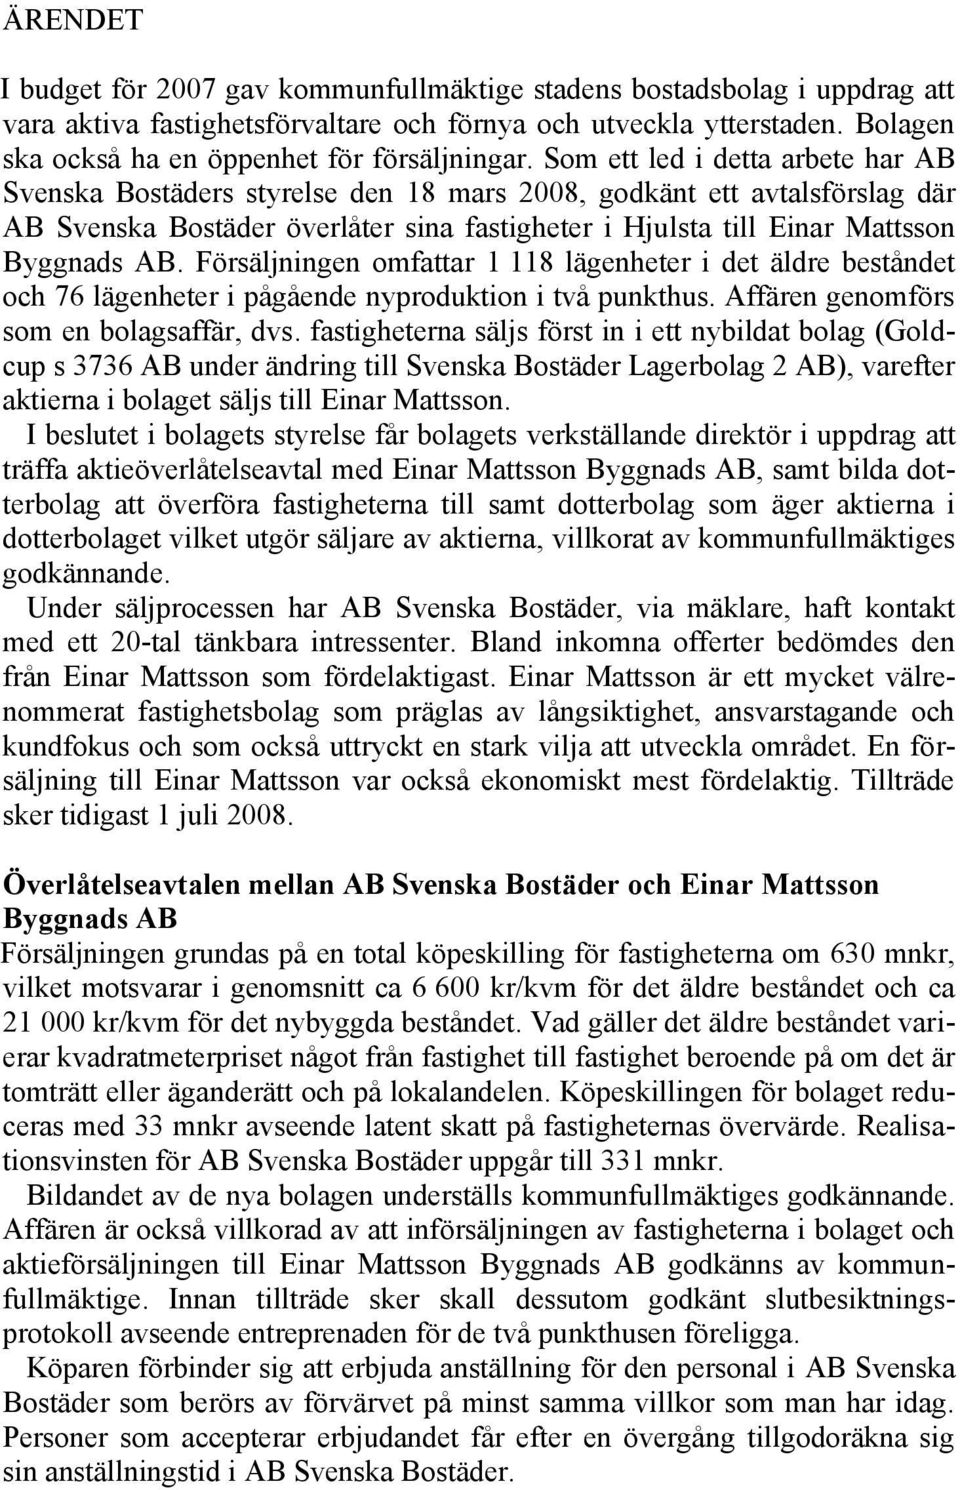 Som ett led i detta arbete har AB Svenska Bostäders styrelse den 18 mars 2008, godkänt ett avtalsförslag där AB Svenska Bostäder överlåter sina fastigheter i Hjulsta till Einar Mattsson Byggnads AB.